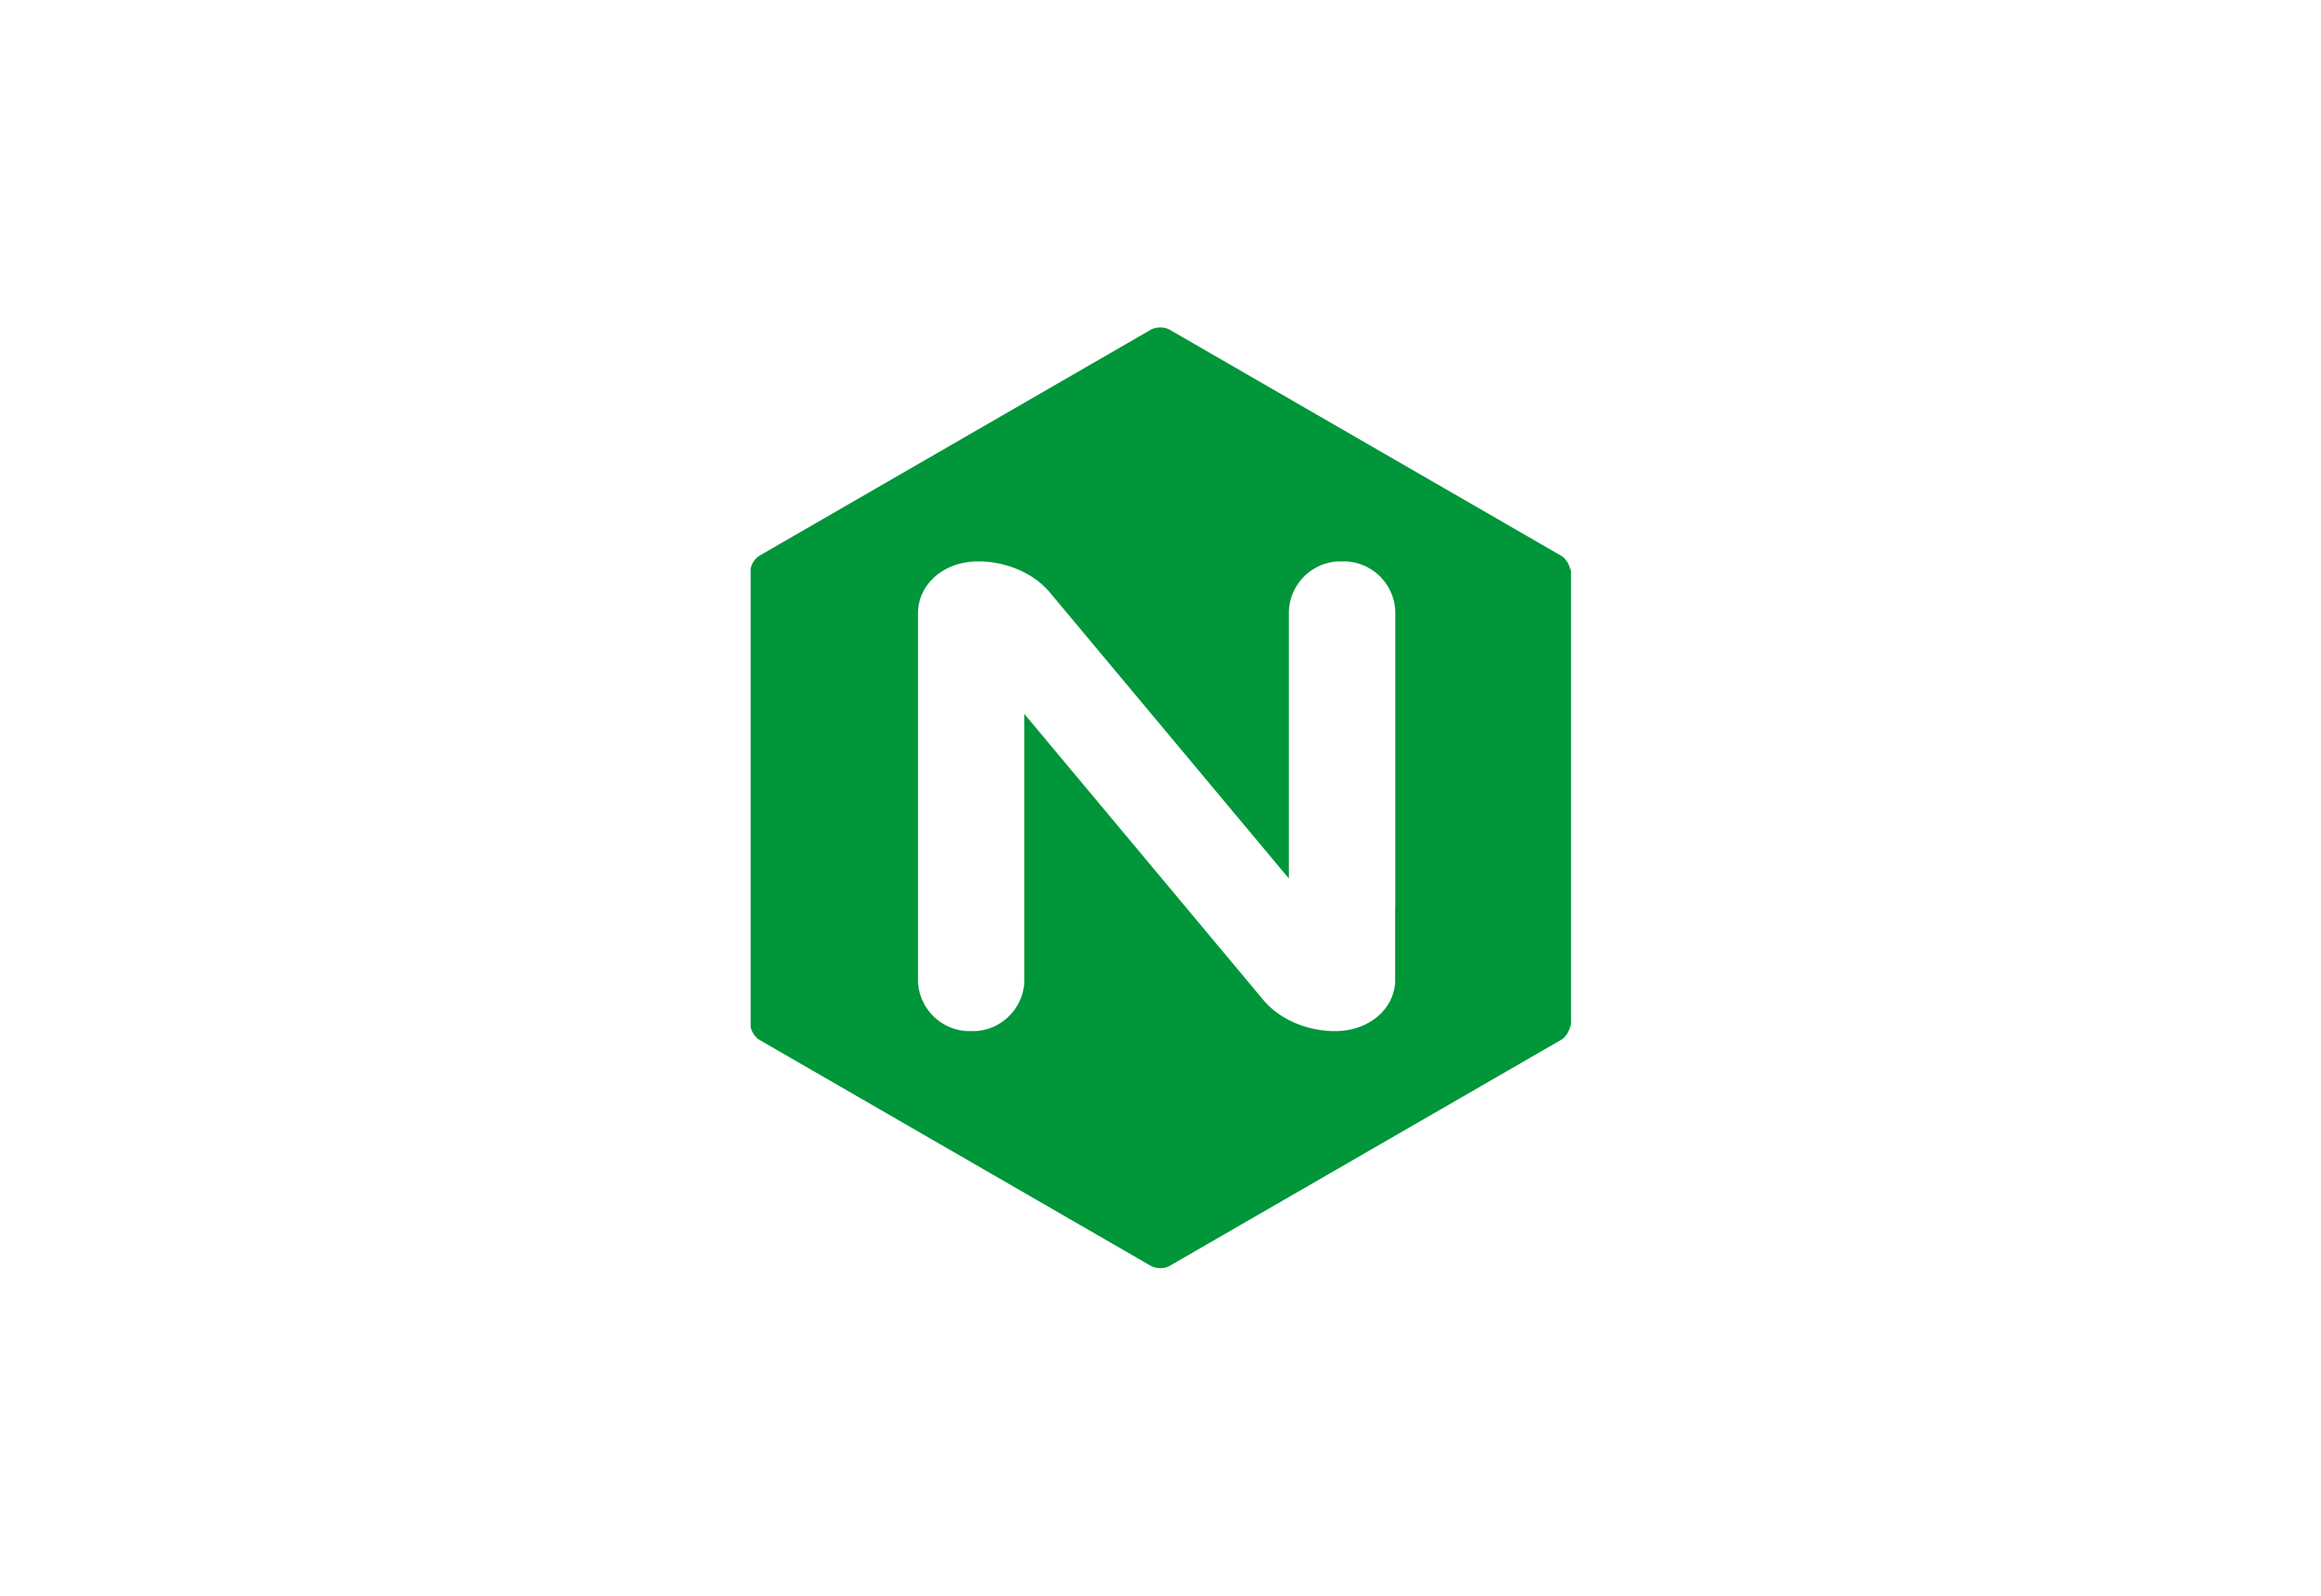 Nginx Logo - Nginx logo | Dwglogo